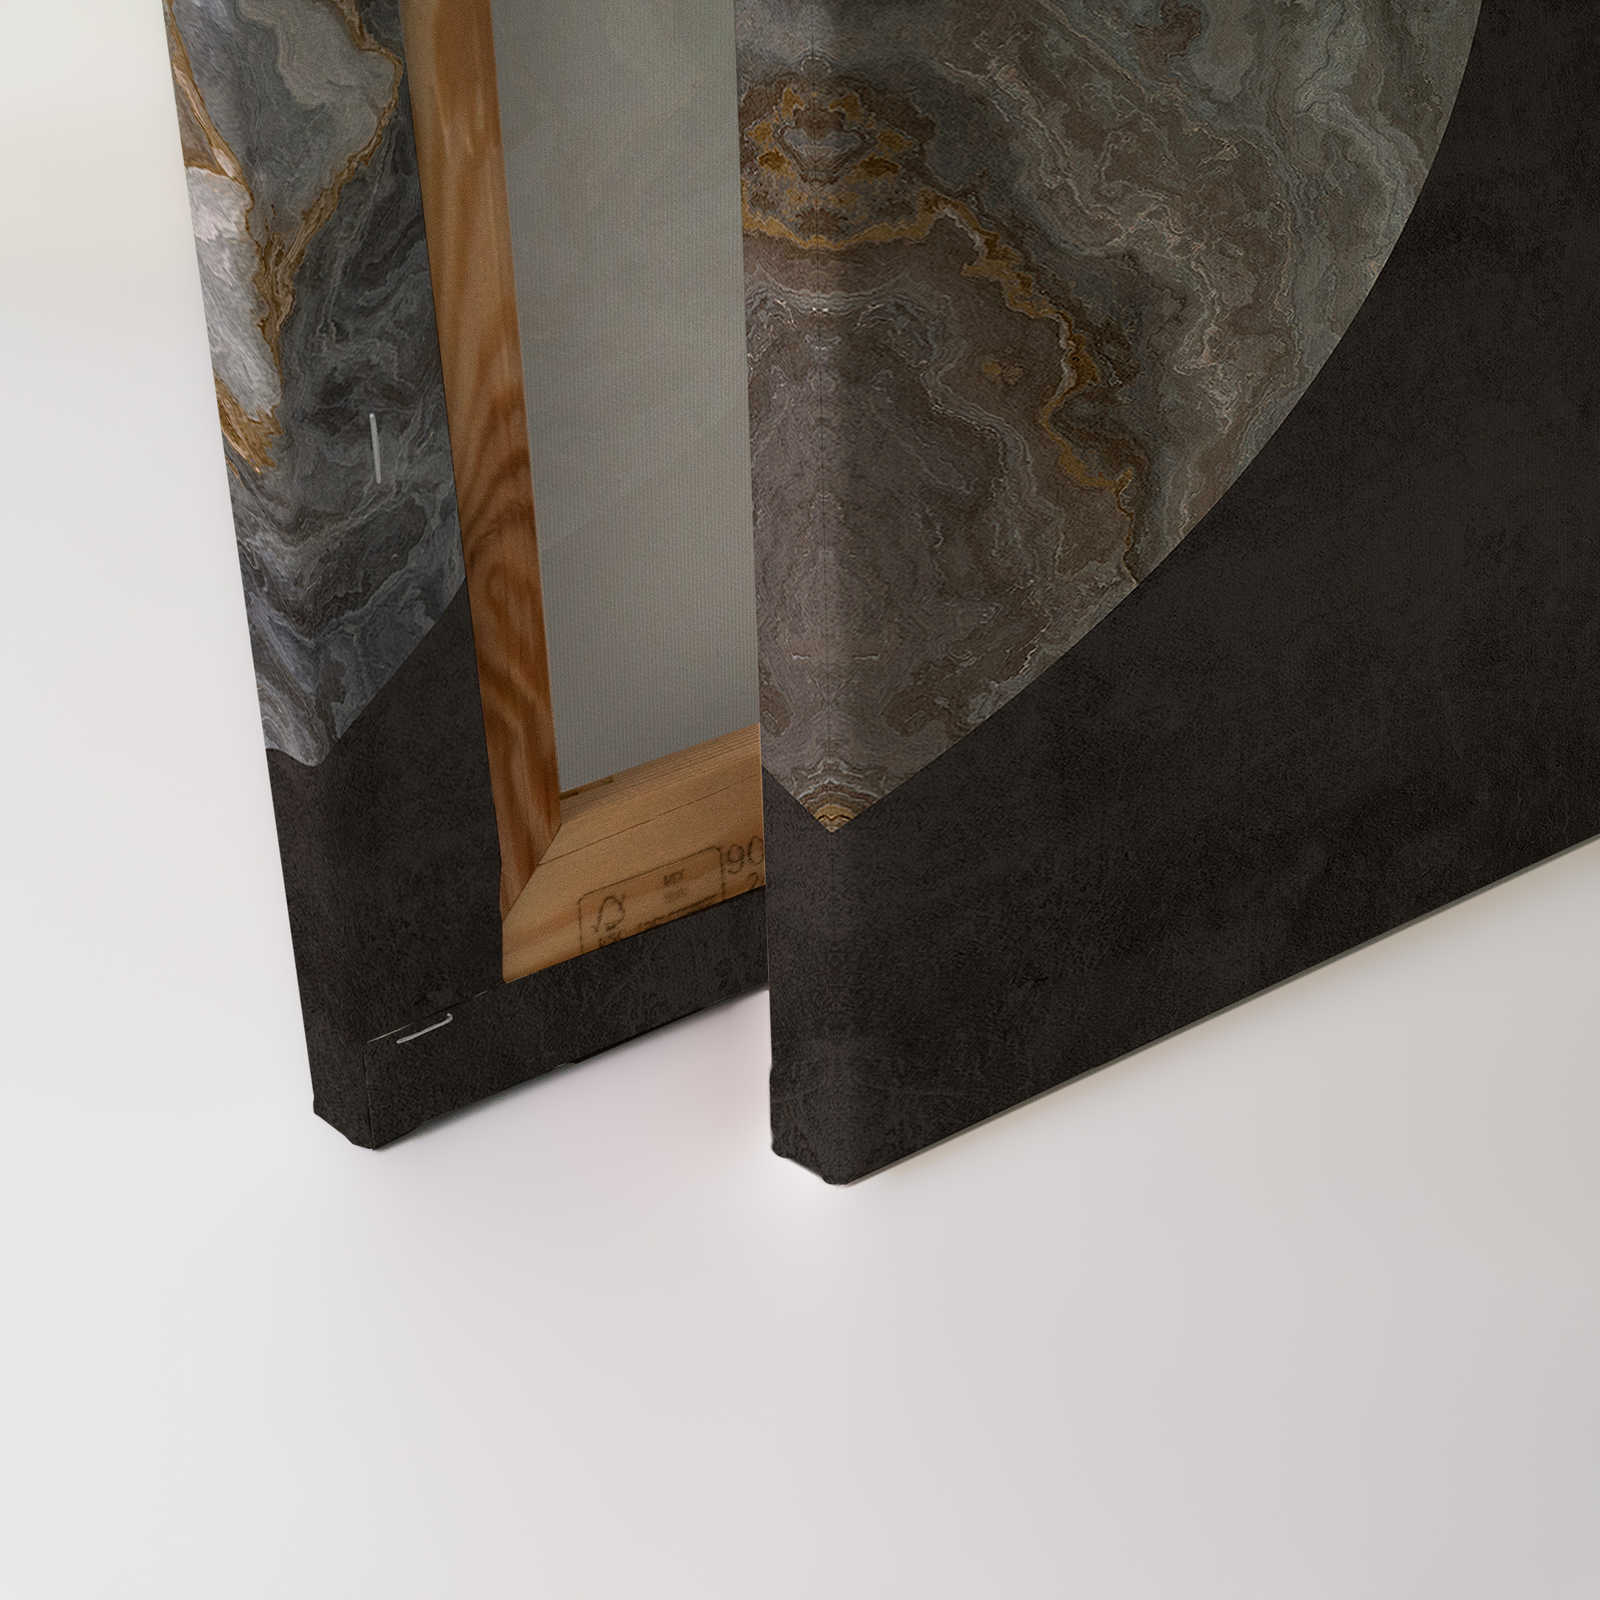             Luna 1 - Marbre toile cercle design & aspect plâtre noir - 1,20 m x 0,80 m
        